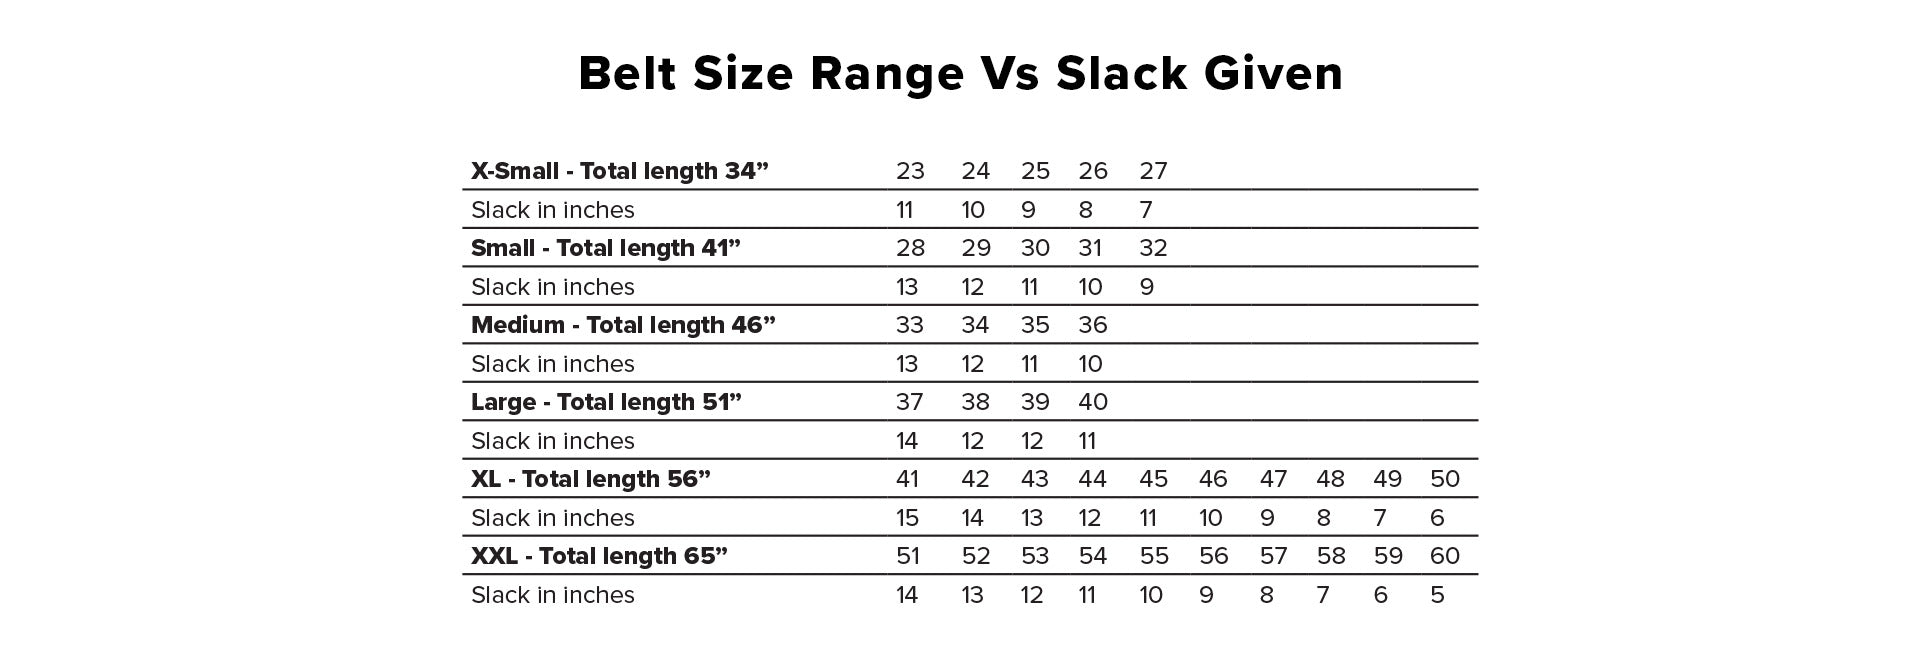 Belt Size Range vs. Slack Given